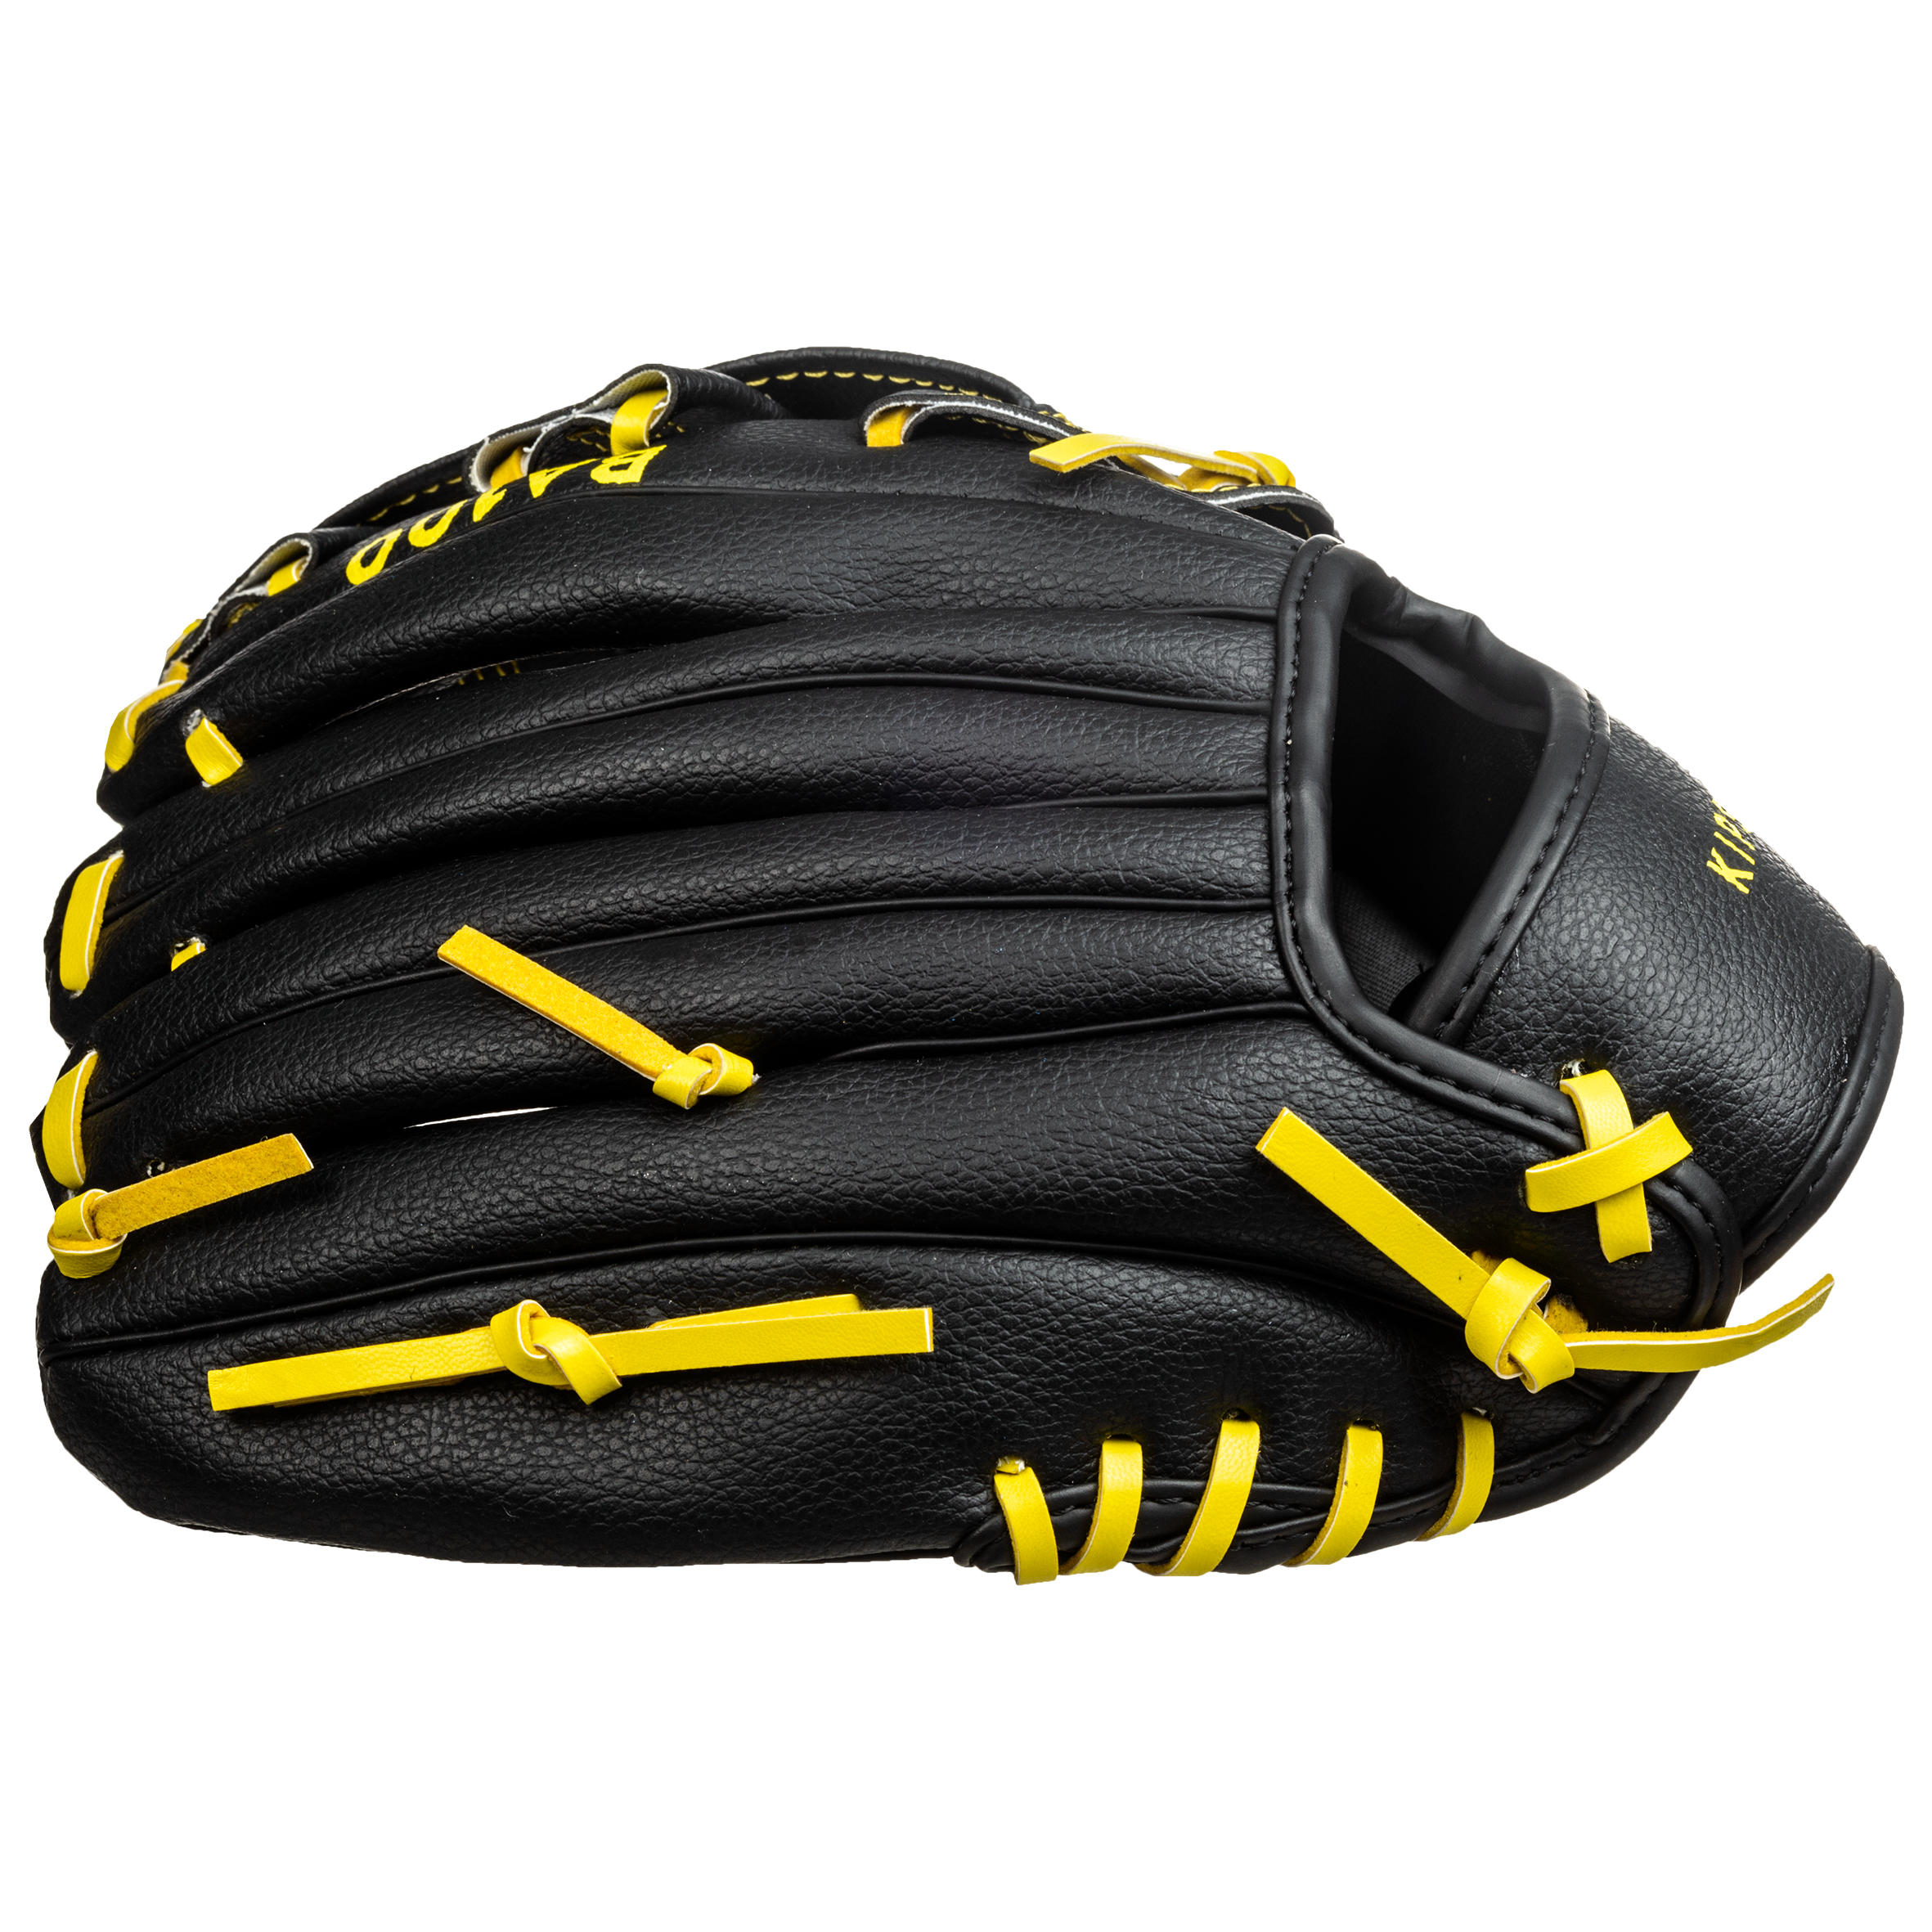 Gant de baseball droitier - BA 100 noir/jaune - KIPSTA